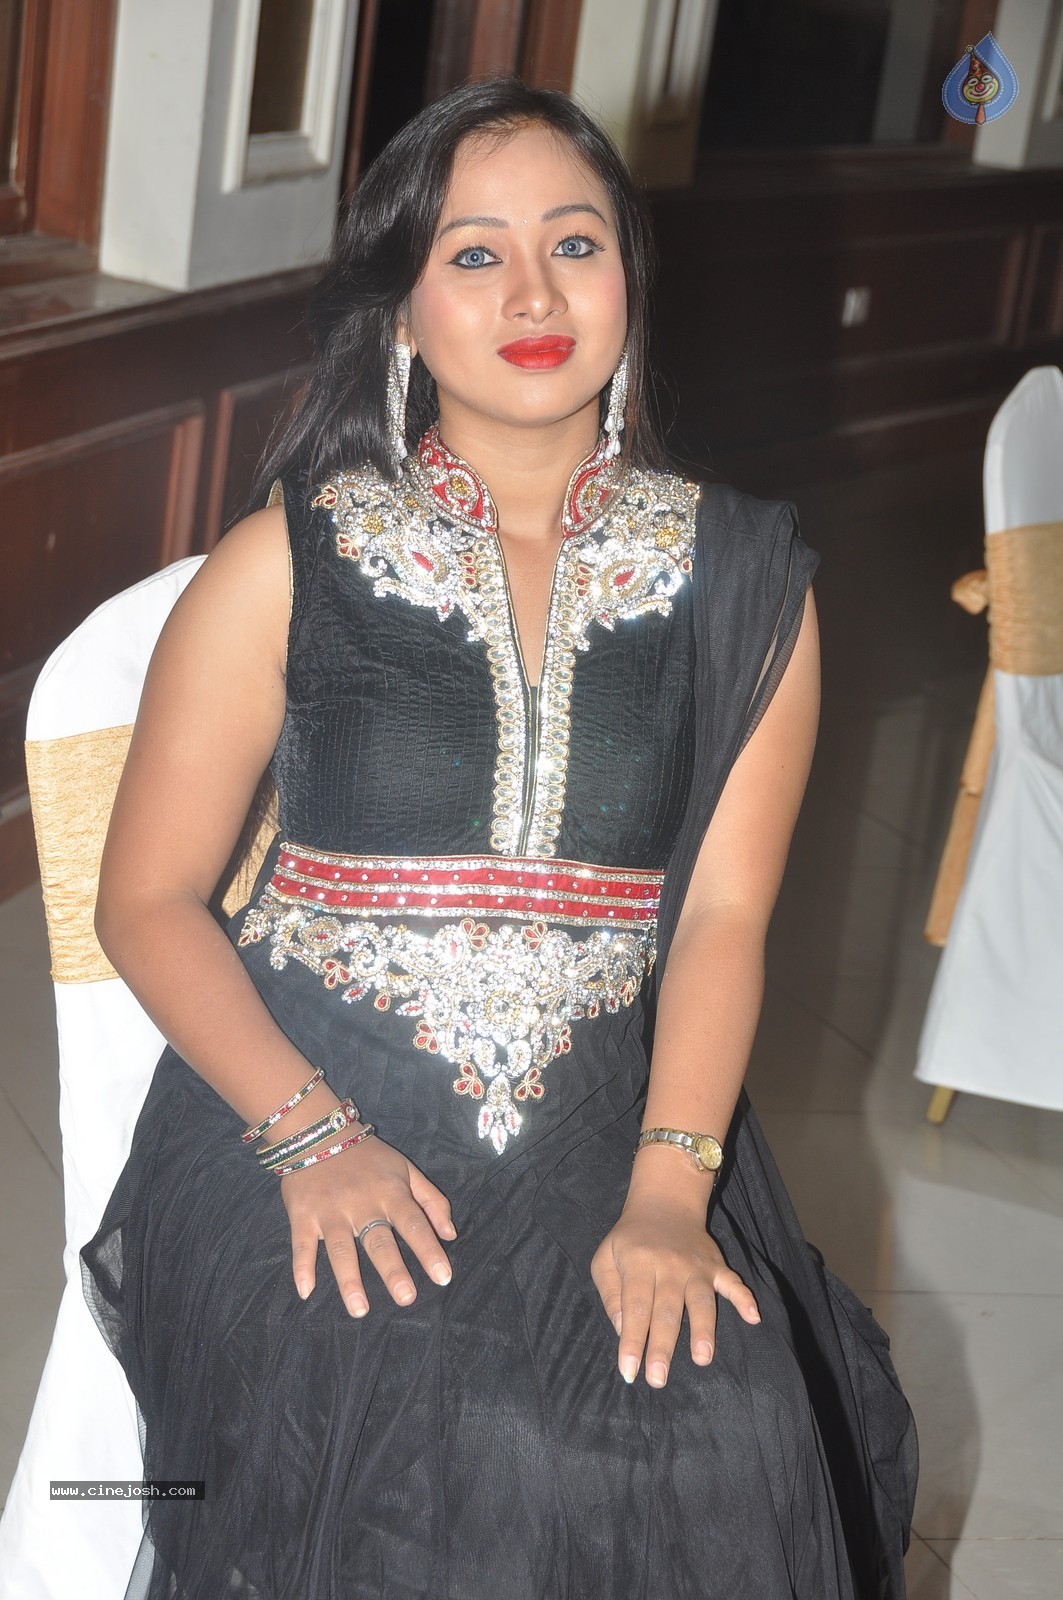 Actress Sneha Photos - 21 / 62 photos